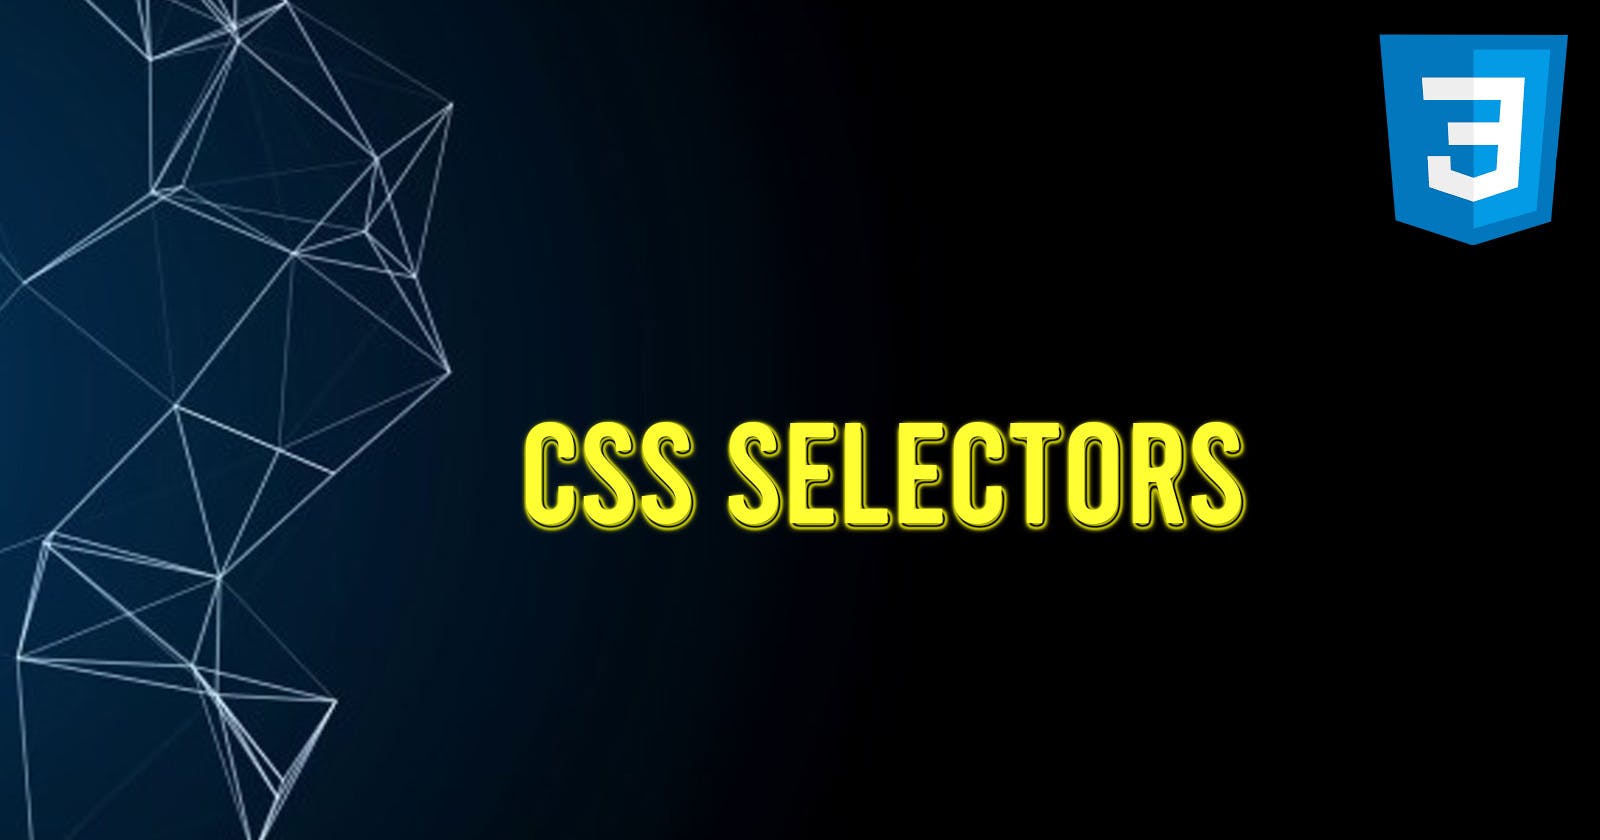 CSS selectors